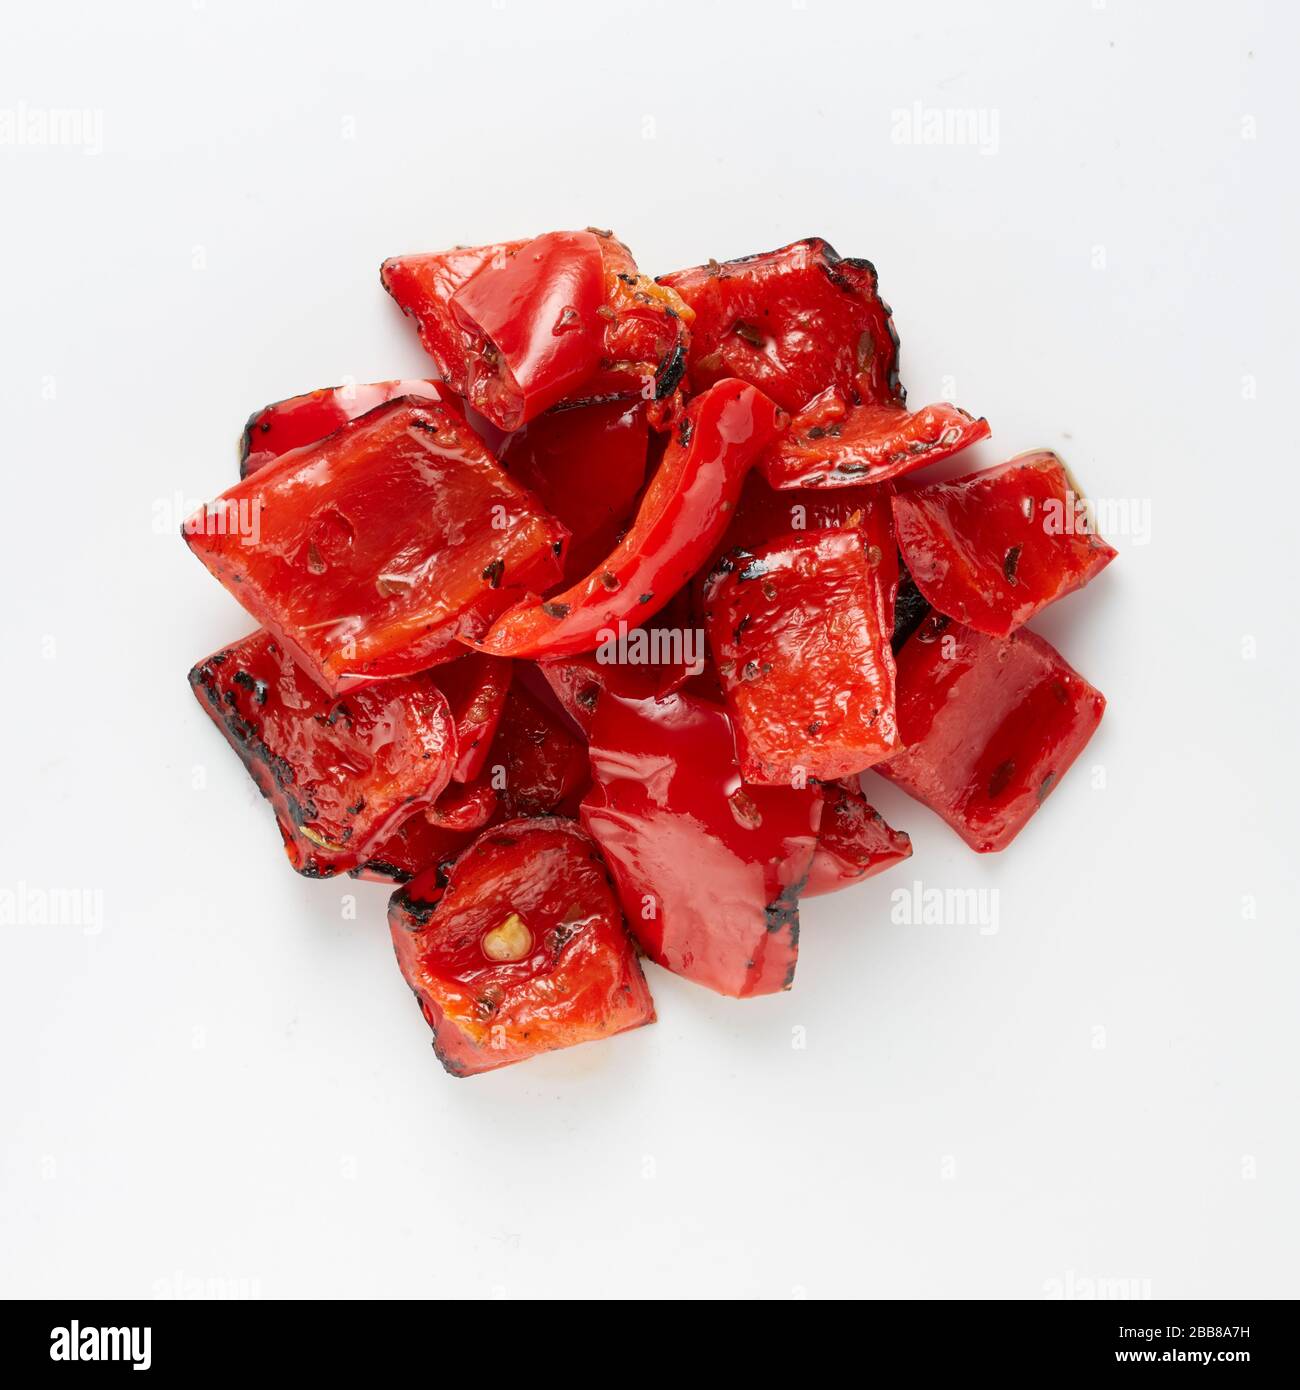 peperoni rossi arrostiti alimentazione vegetariana vegan cibo nutriente mangiare porzione di cibo preparato campione di verdure rotonde Foto Stock